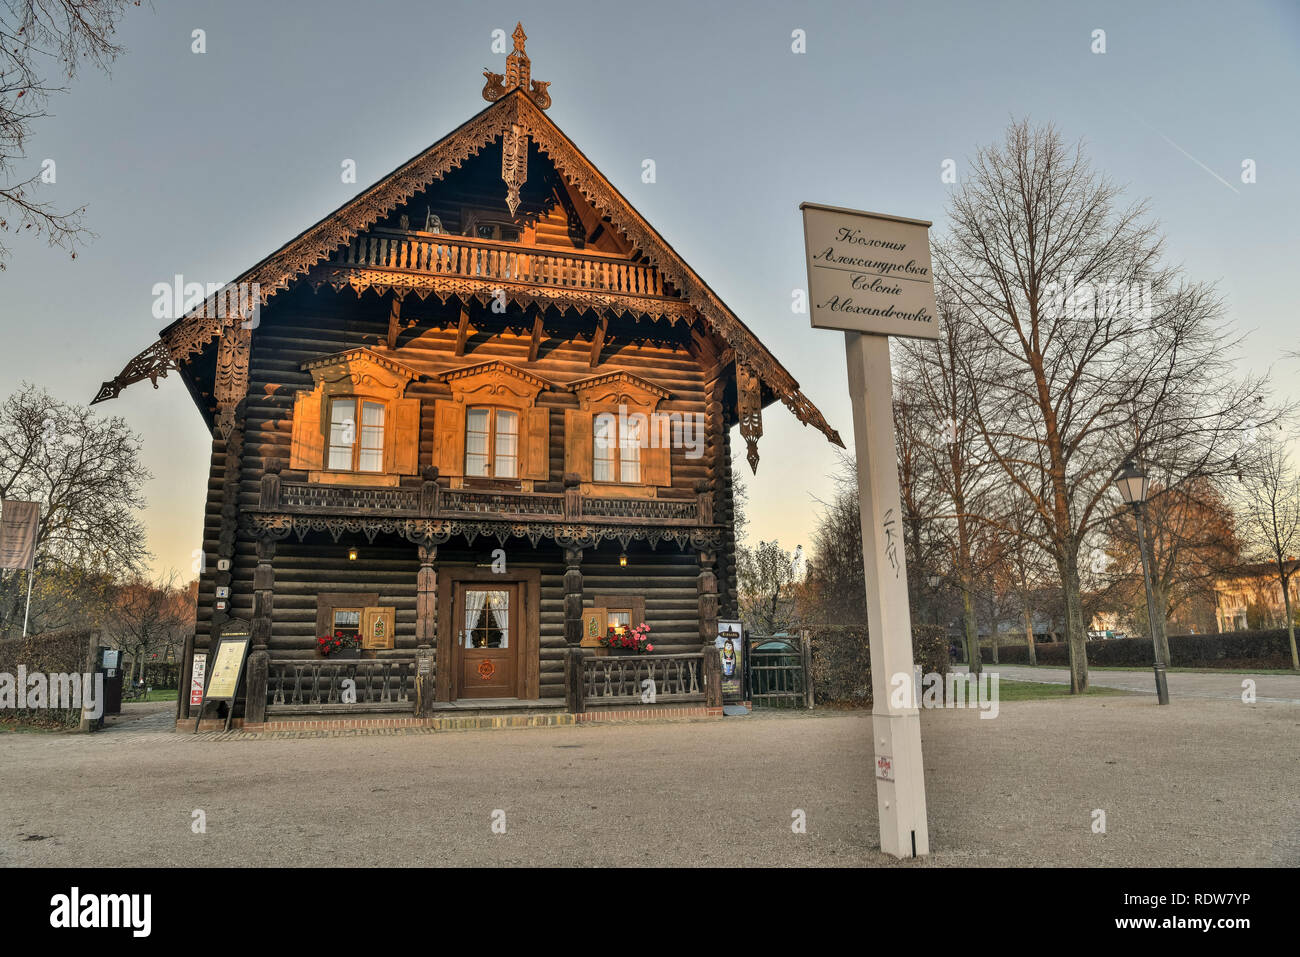 Potsdam, Deutschland - 16 November 2018. Holzhaus und Russische Kolonie Alexandrowka Zeichen in der russischen Nachbarschaft Alexandrowka in Potsdam. Stockfoto